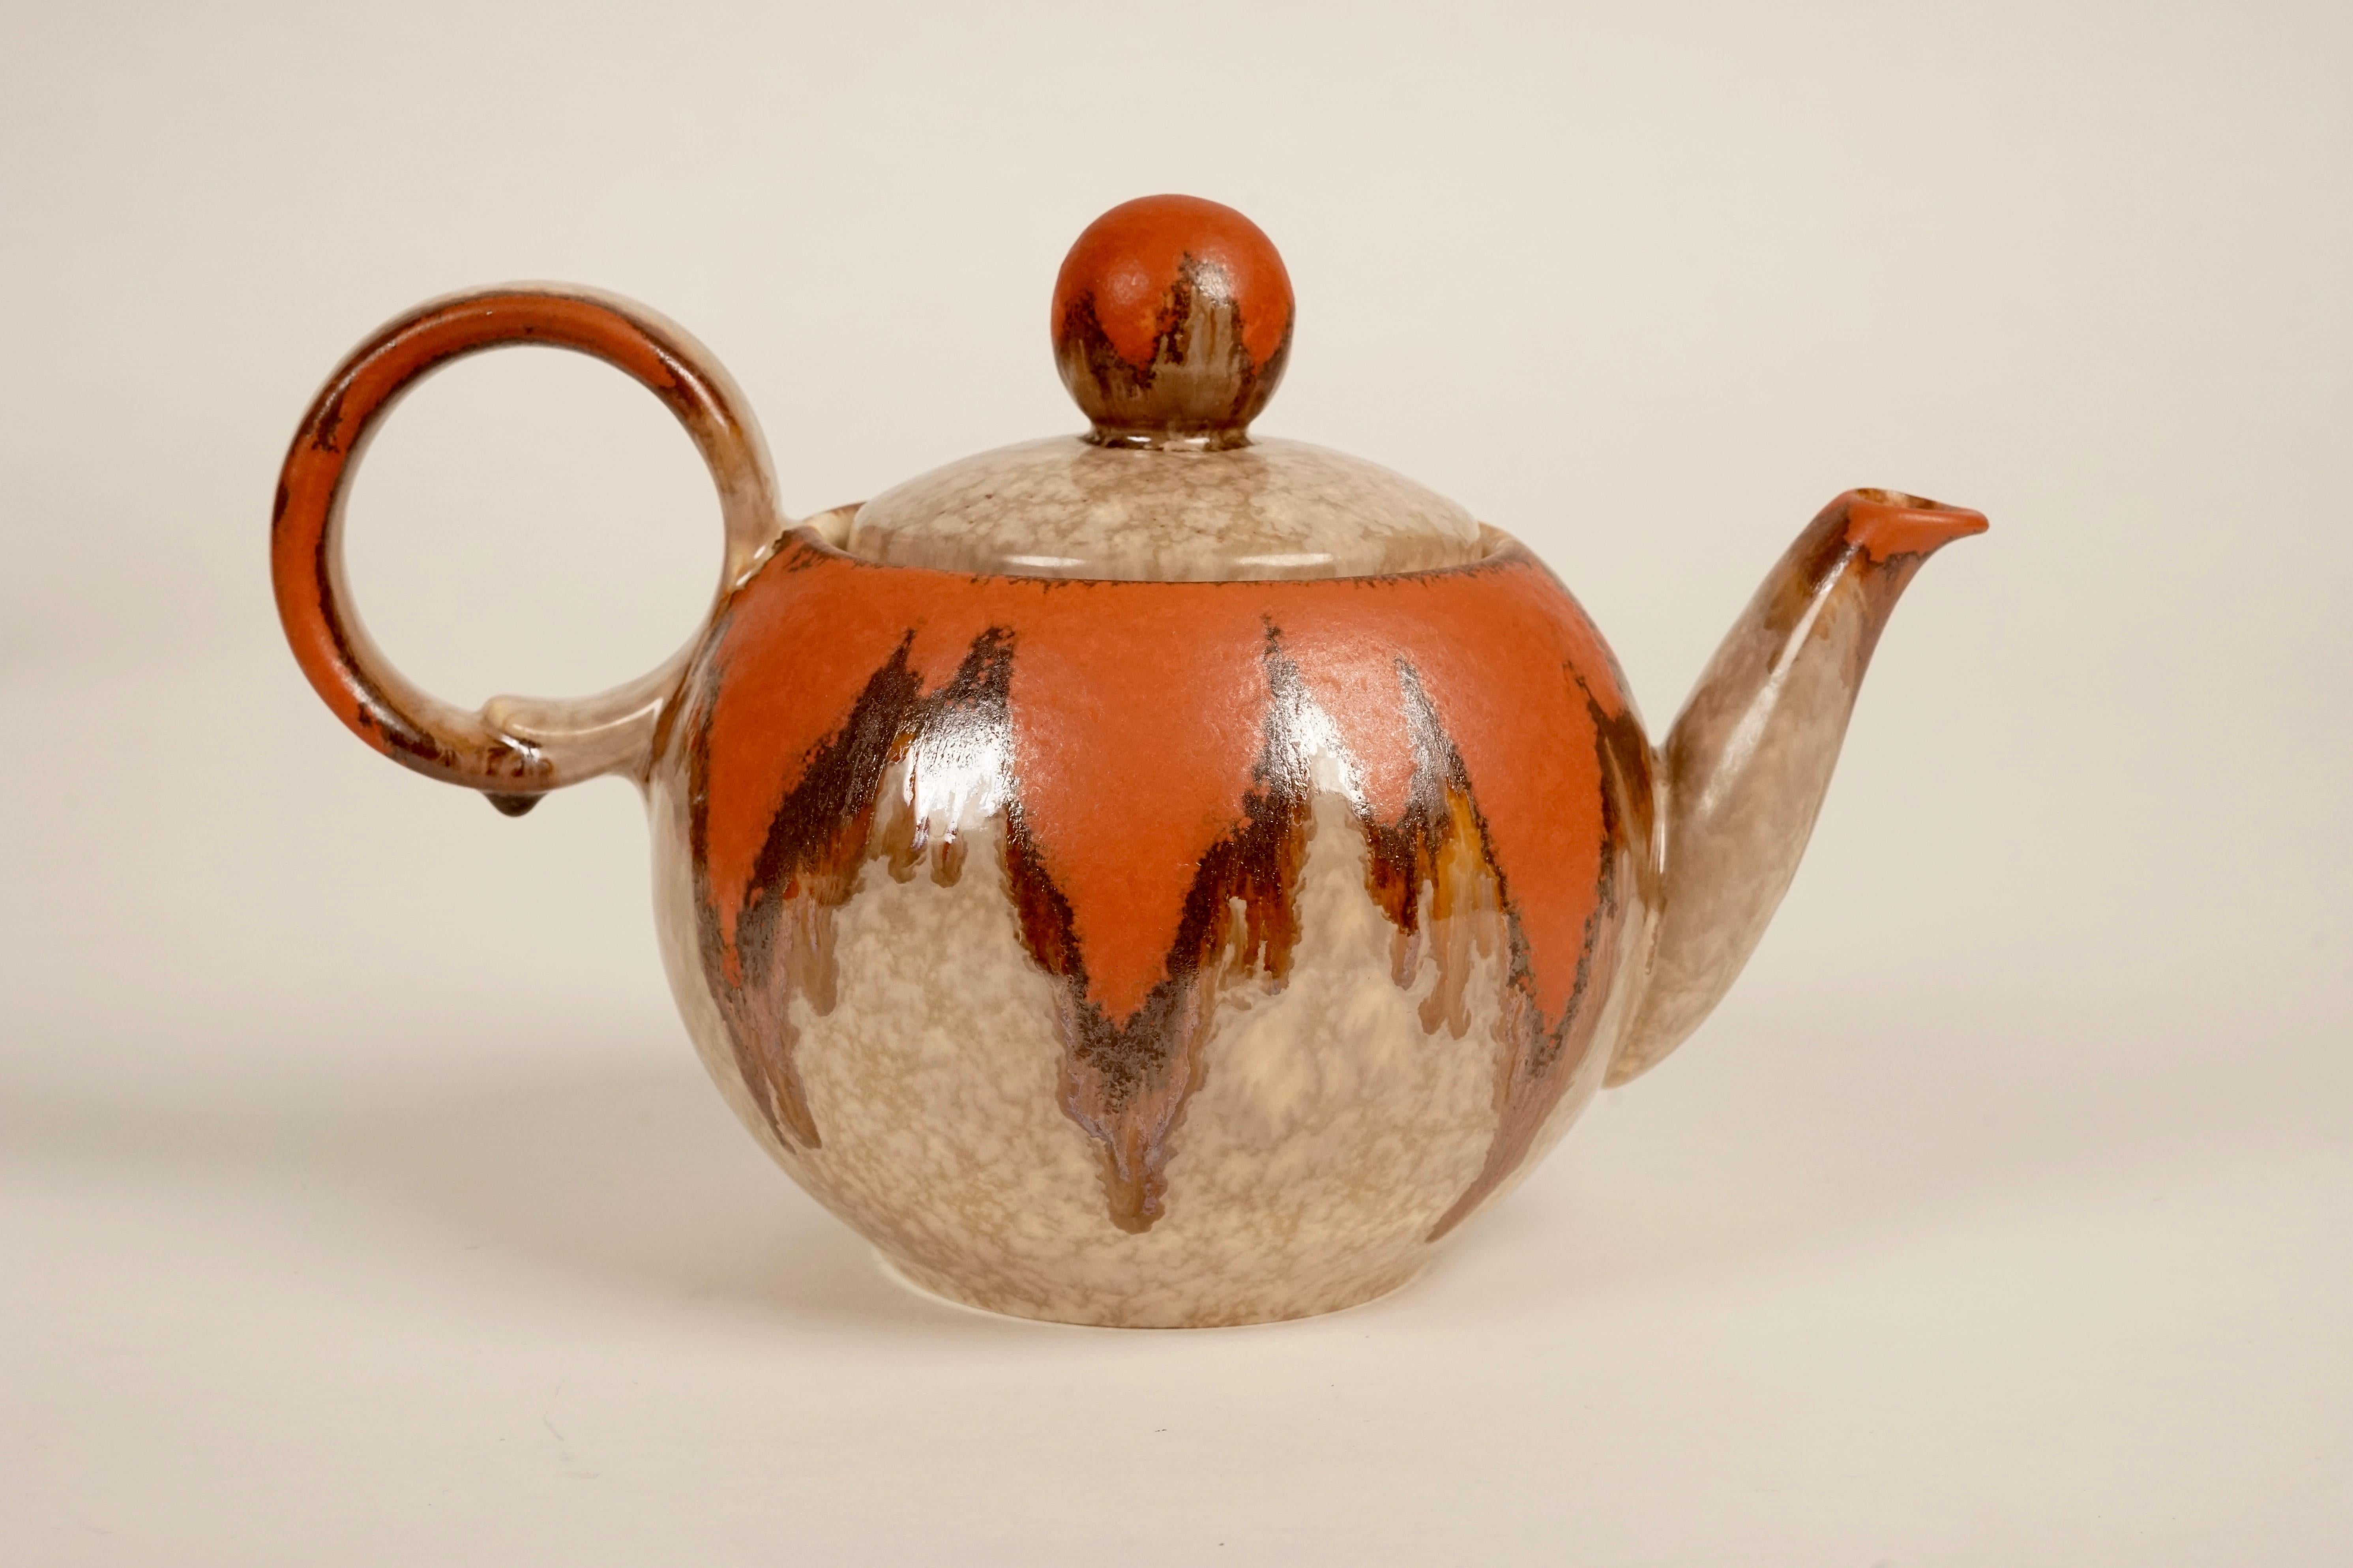 Service à thé en céramique, modèle Madelon des années 1930 produit en Tchécoslovaquie.
La glaçure coulante brun-orange comme décor, est typique de cette période.
La forme unique de la tasse à thé est étonnante et tellement fonctionnelle.
Toutes